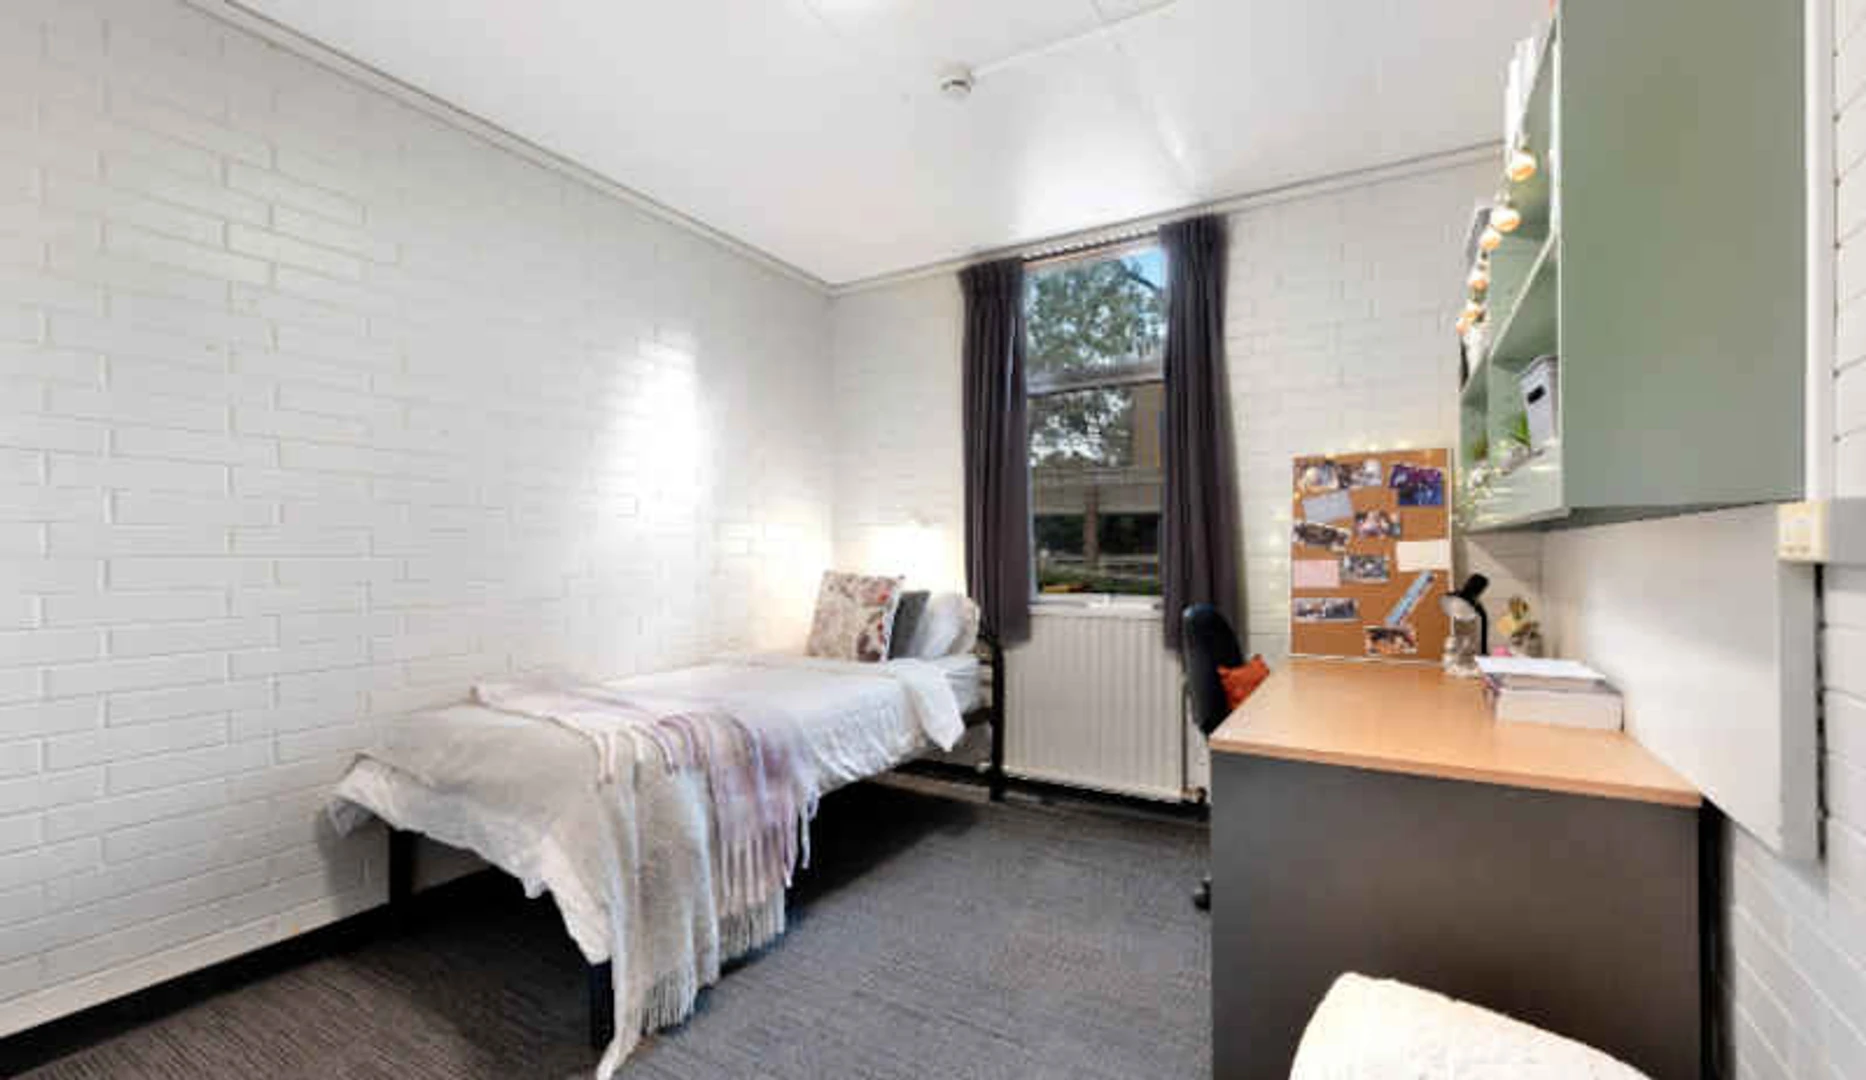 Gemeinsames Zimmer mit einem anderen Studierenden in Melbourne